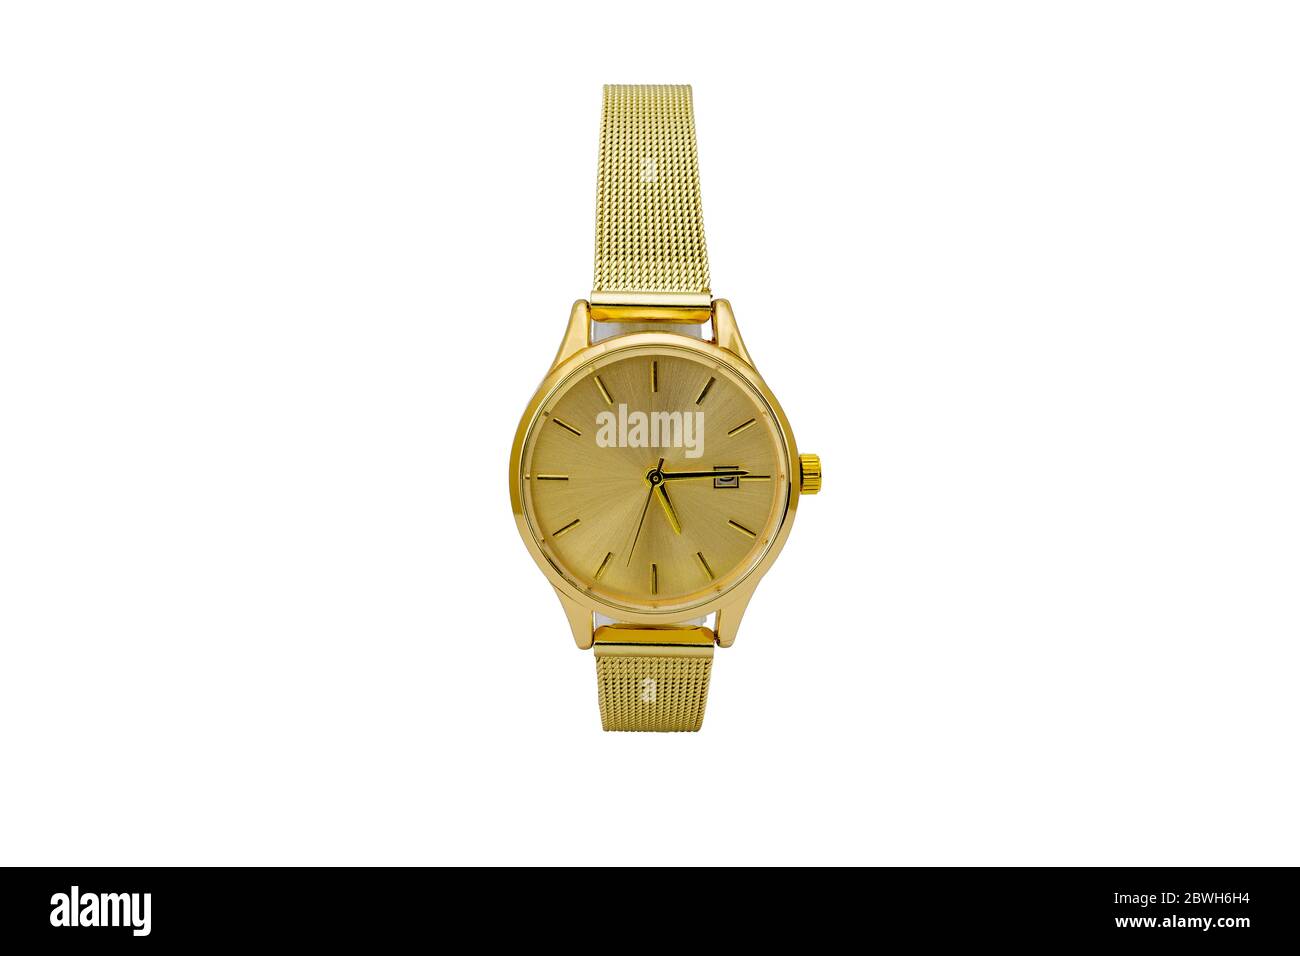 Reloj de pulsera clásico correa de malla metálica mate dorada y esfera de marcación amarilla, aislado sobre fondo blanco Fotografía de stock - Alamy